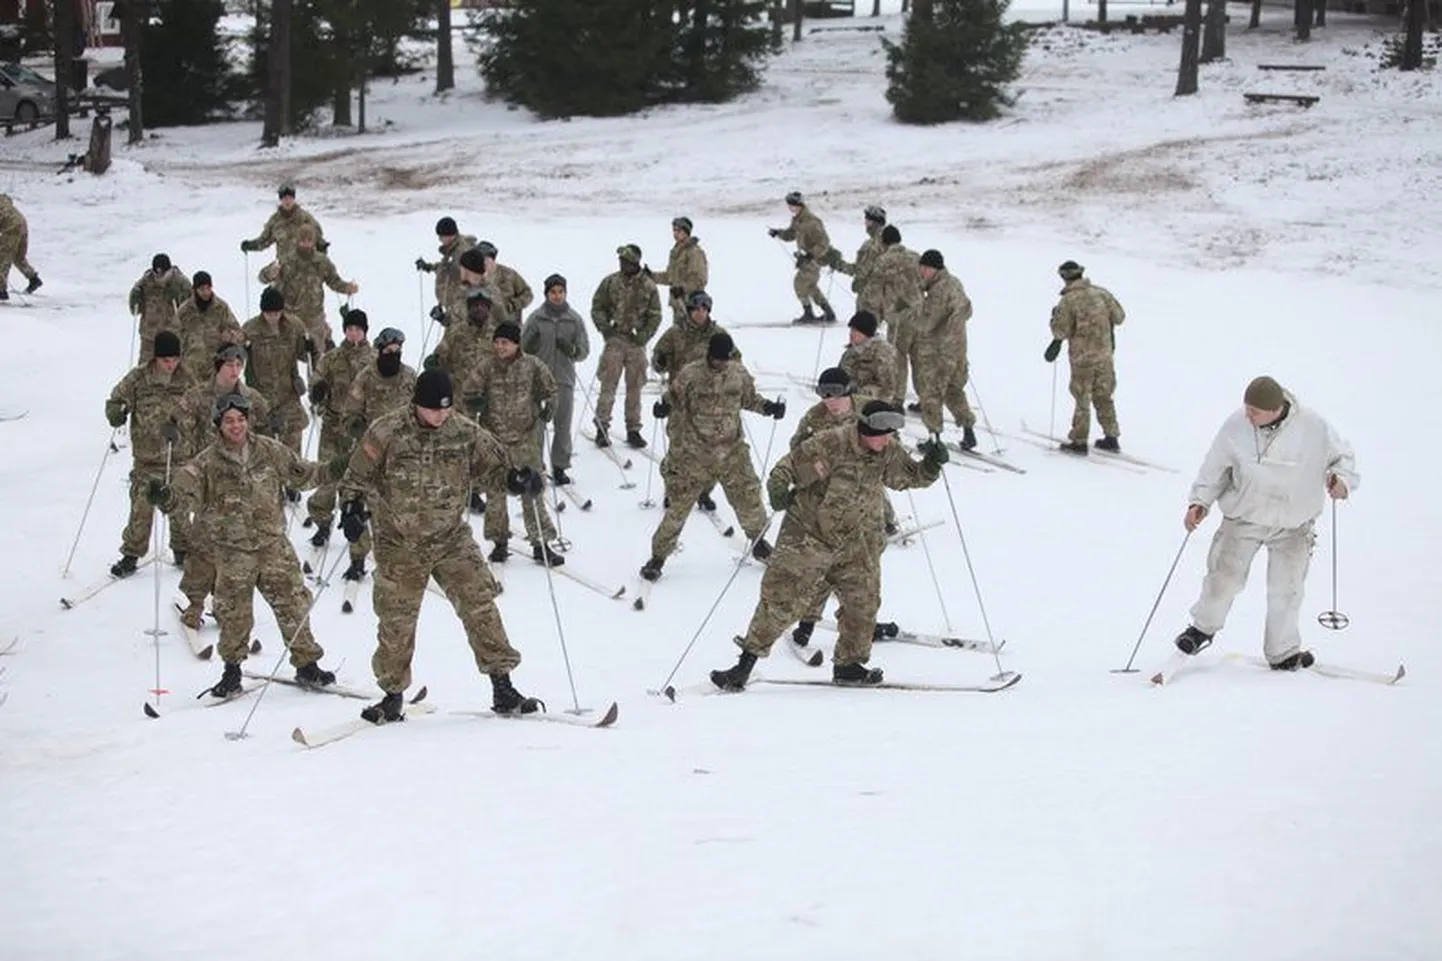 USA sõjaväelased õppisid sõjapidamist talvistes tingimustes.Foto on illustreeriv.